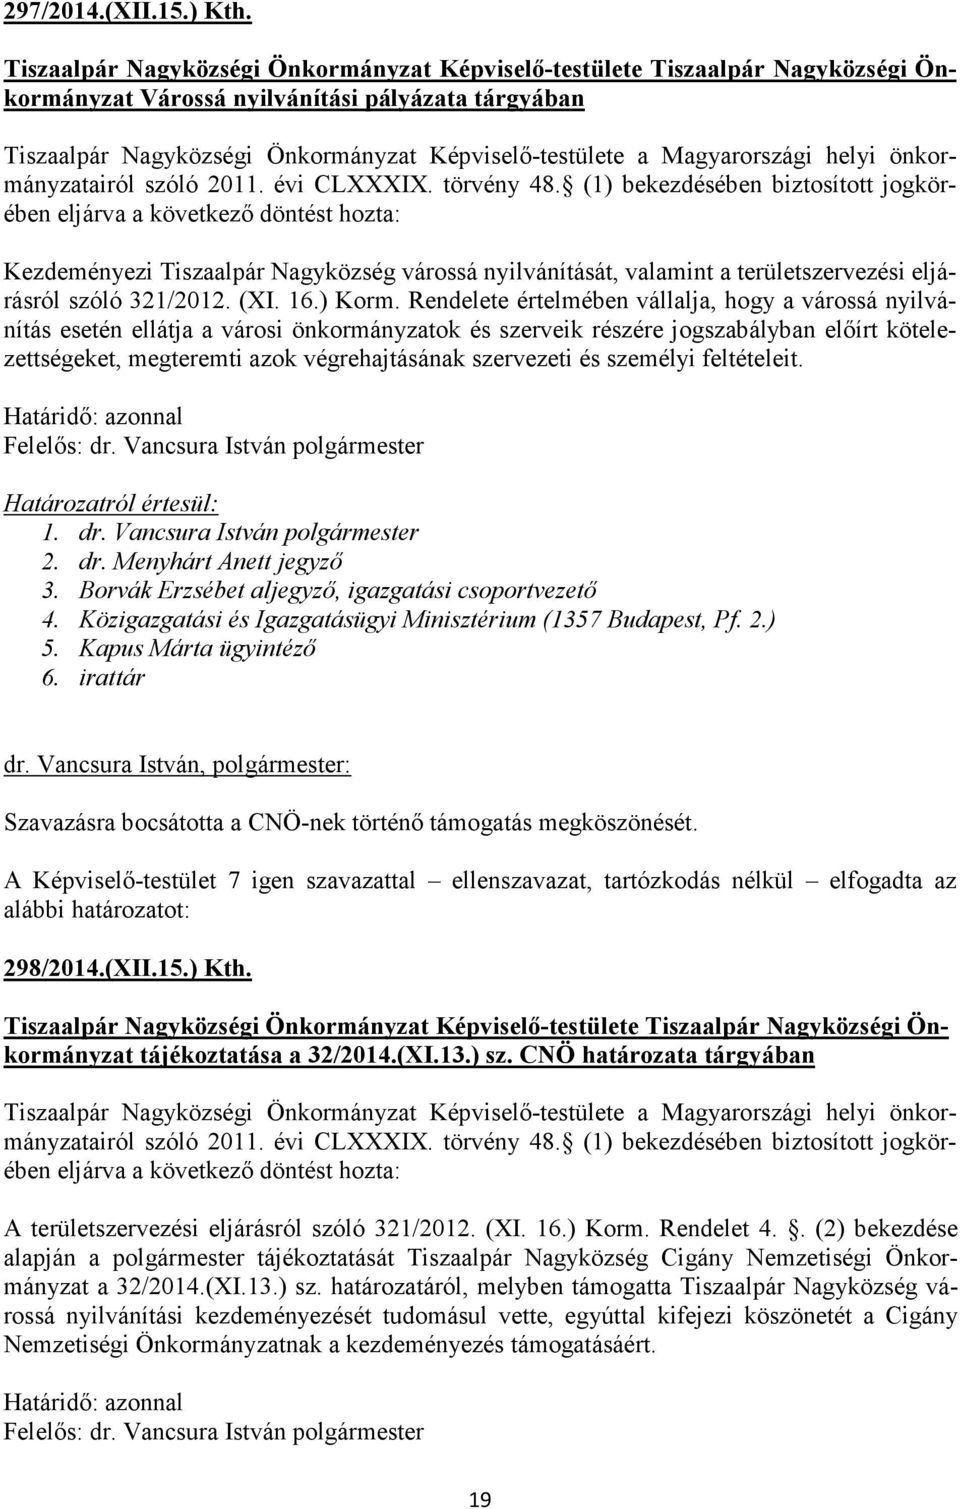 Magyarországi helyi önkormányzatairól szóló 2011. évi CLXXXIX. törvény 48.